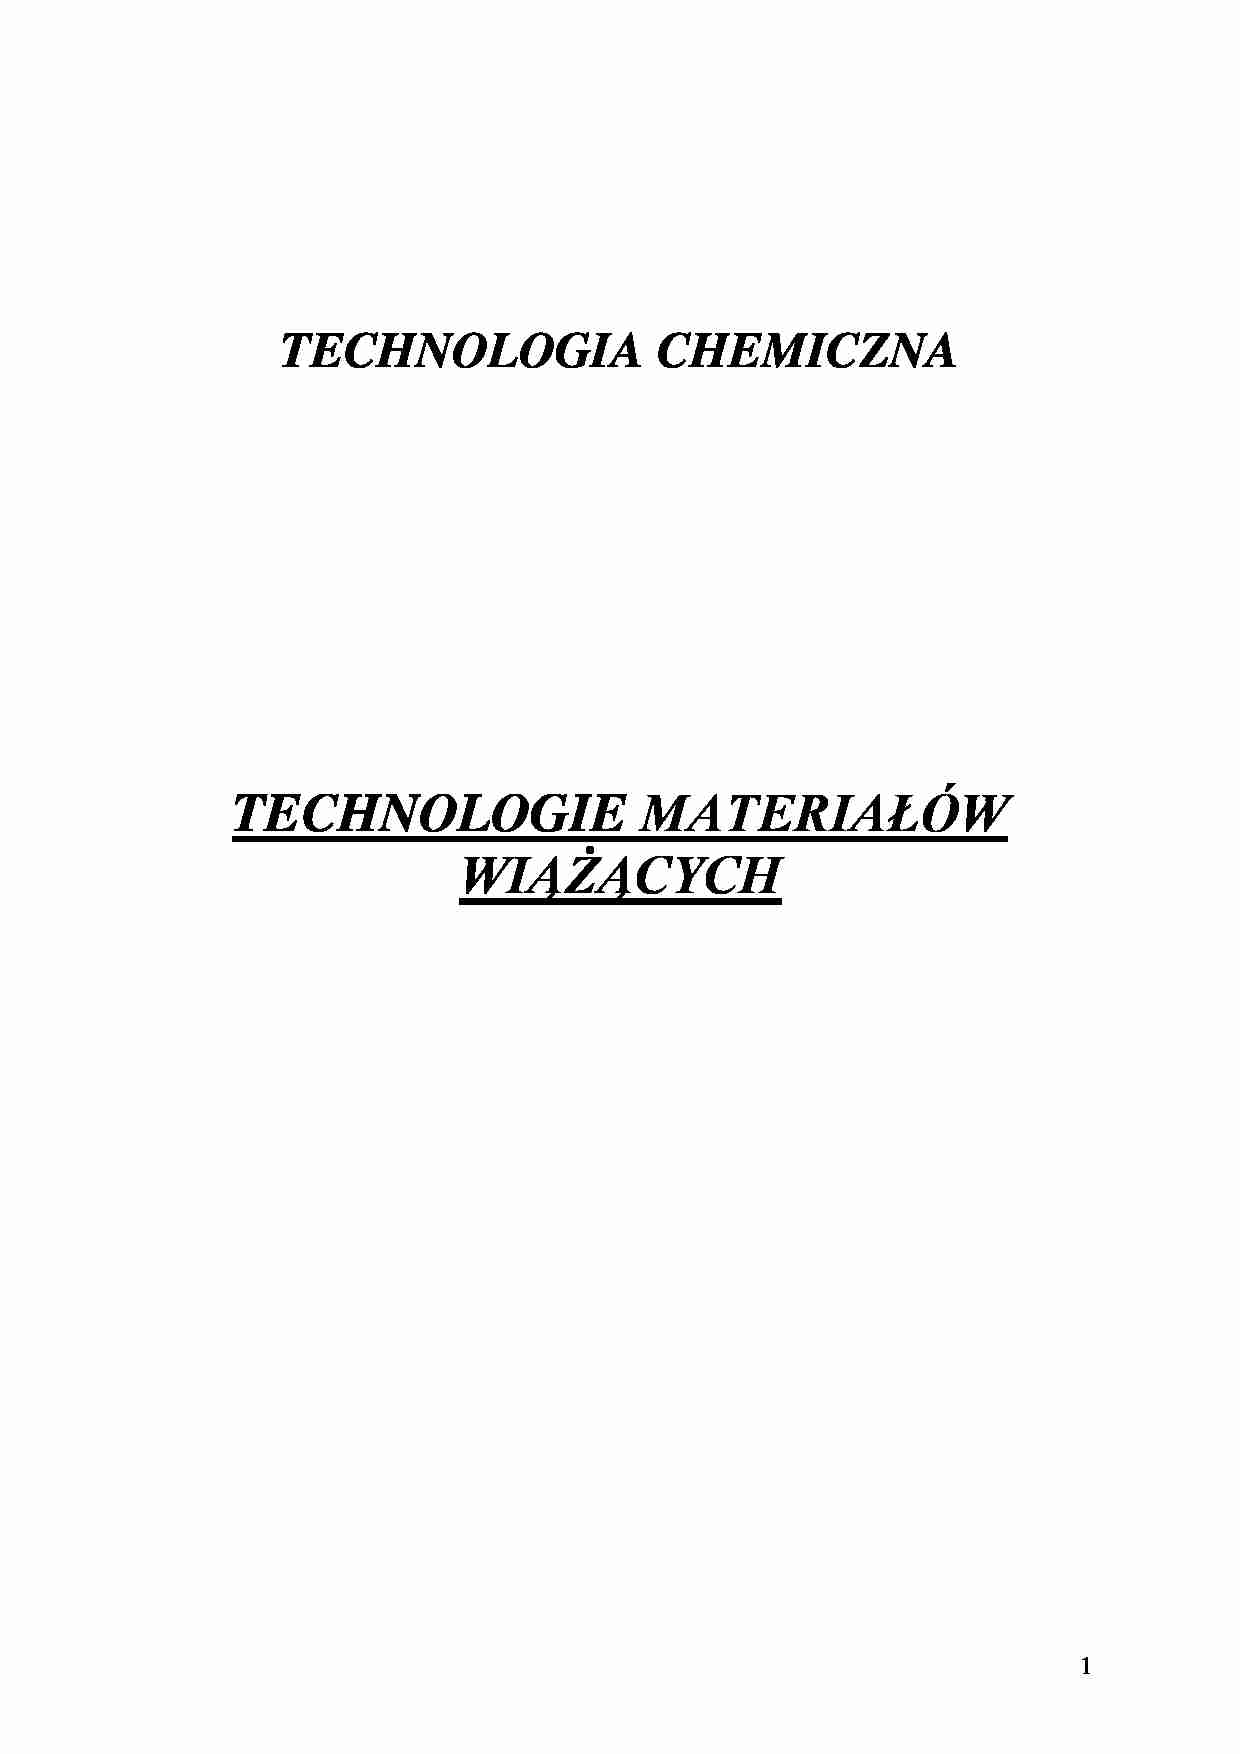 Technologia materiałów wiążących-opracowanie - strona 1